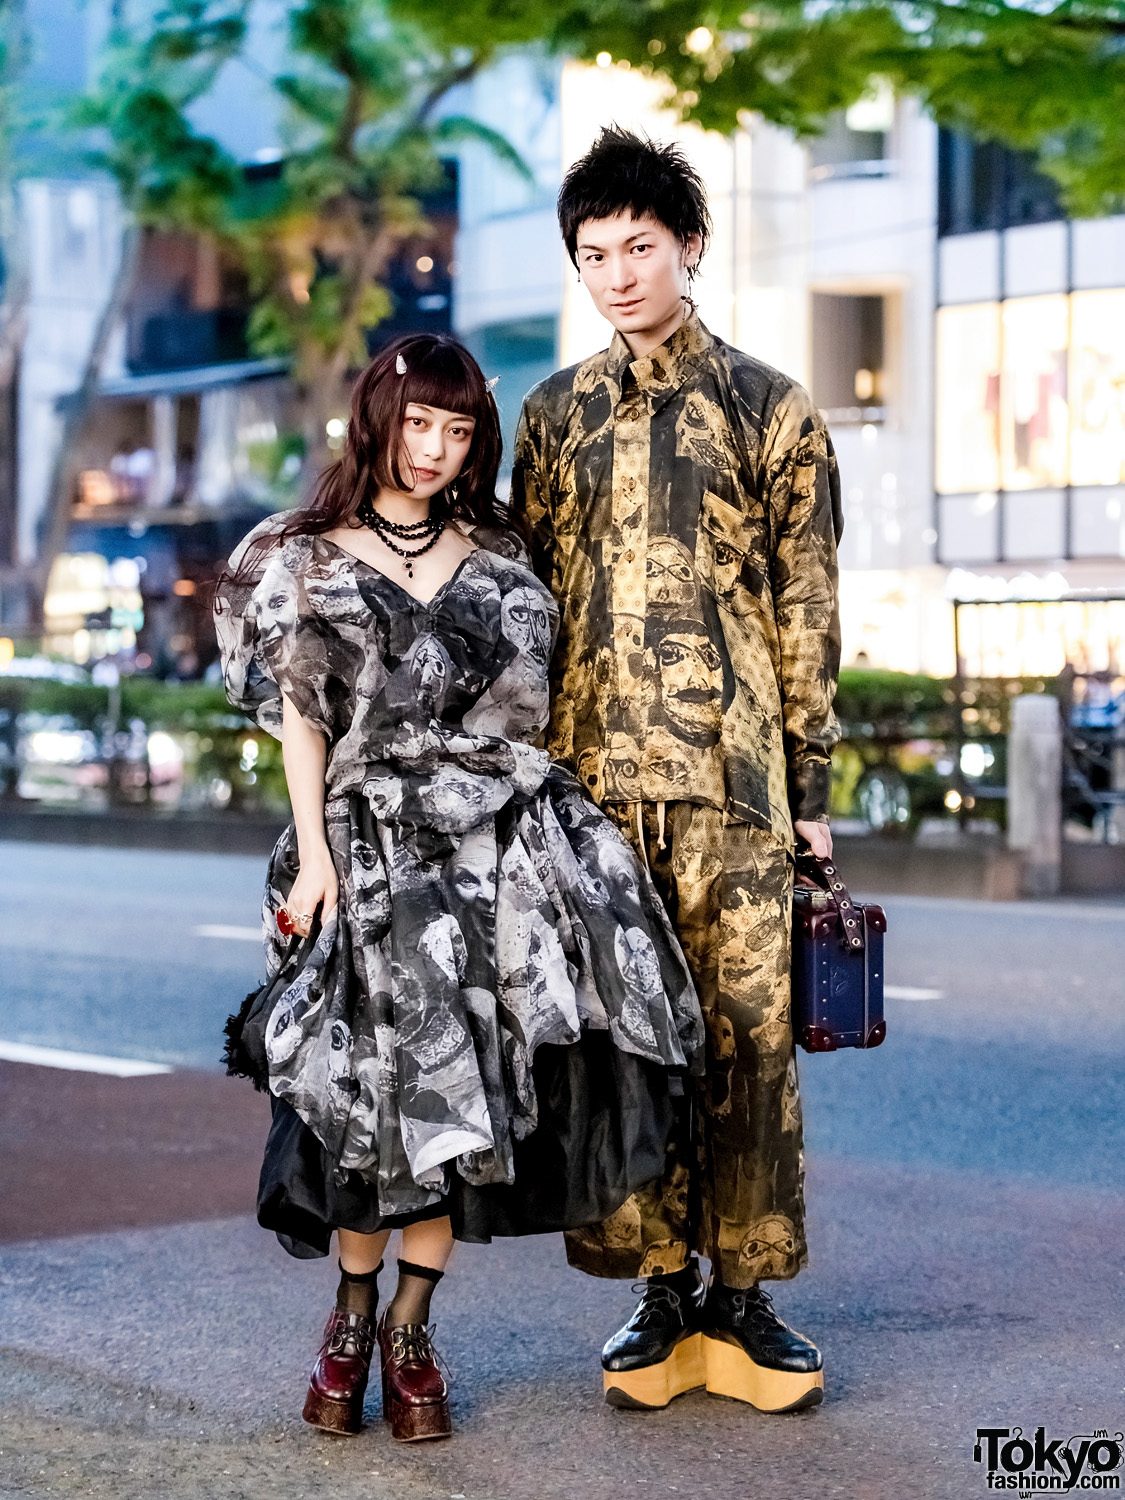 Matching Vivienne Westwood Print Streetwear Styles in Harajuku